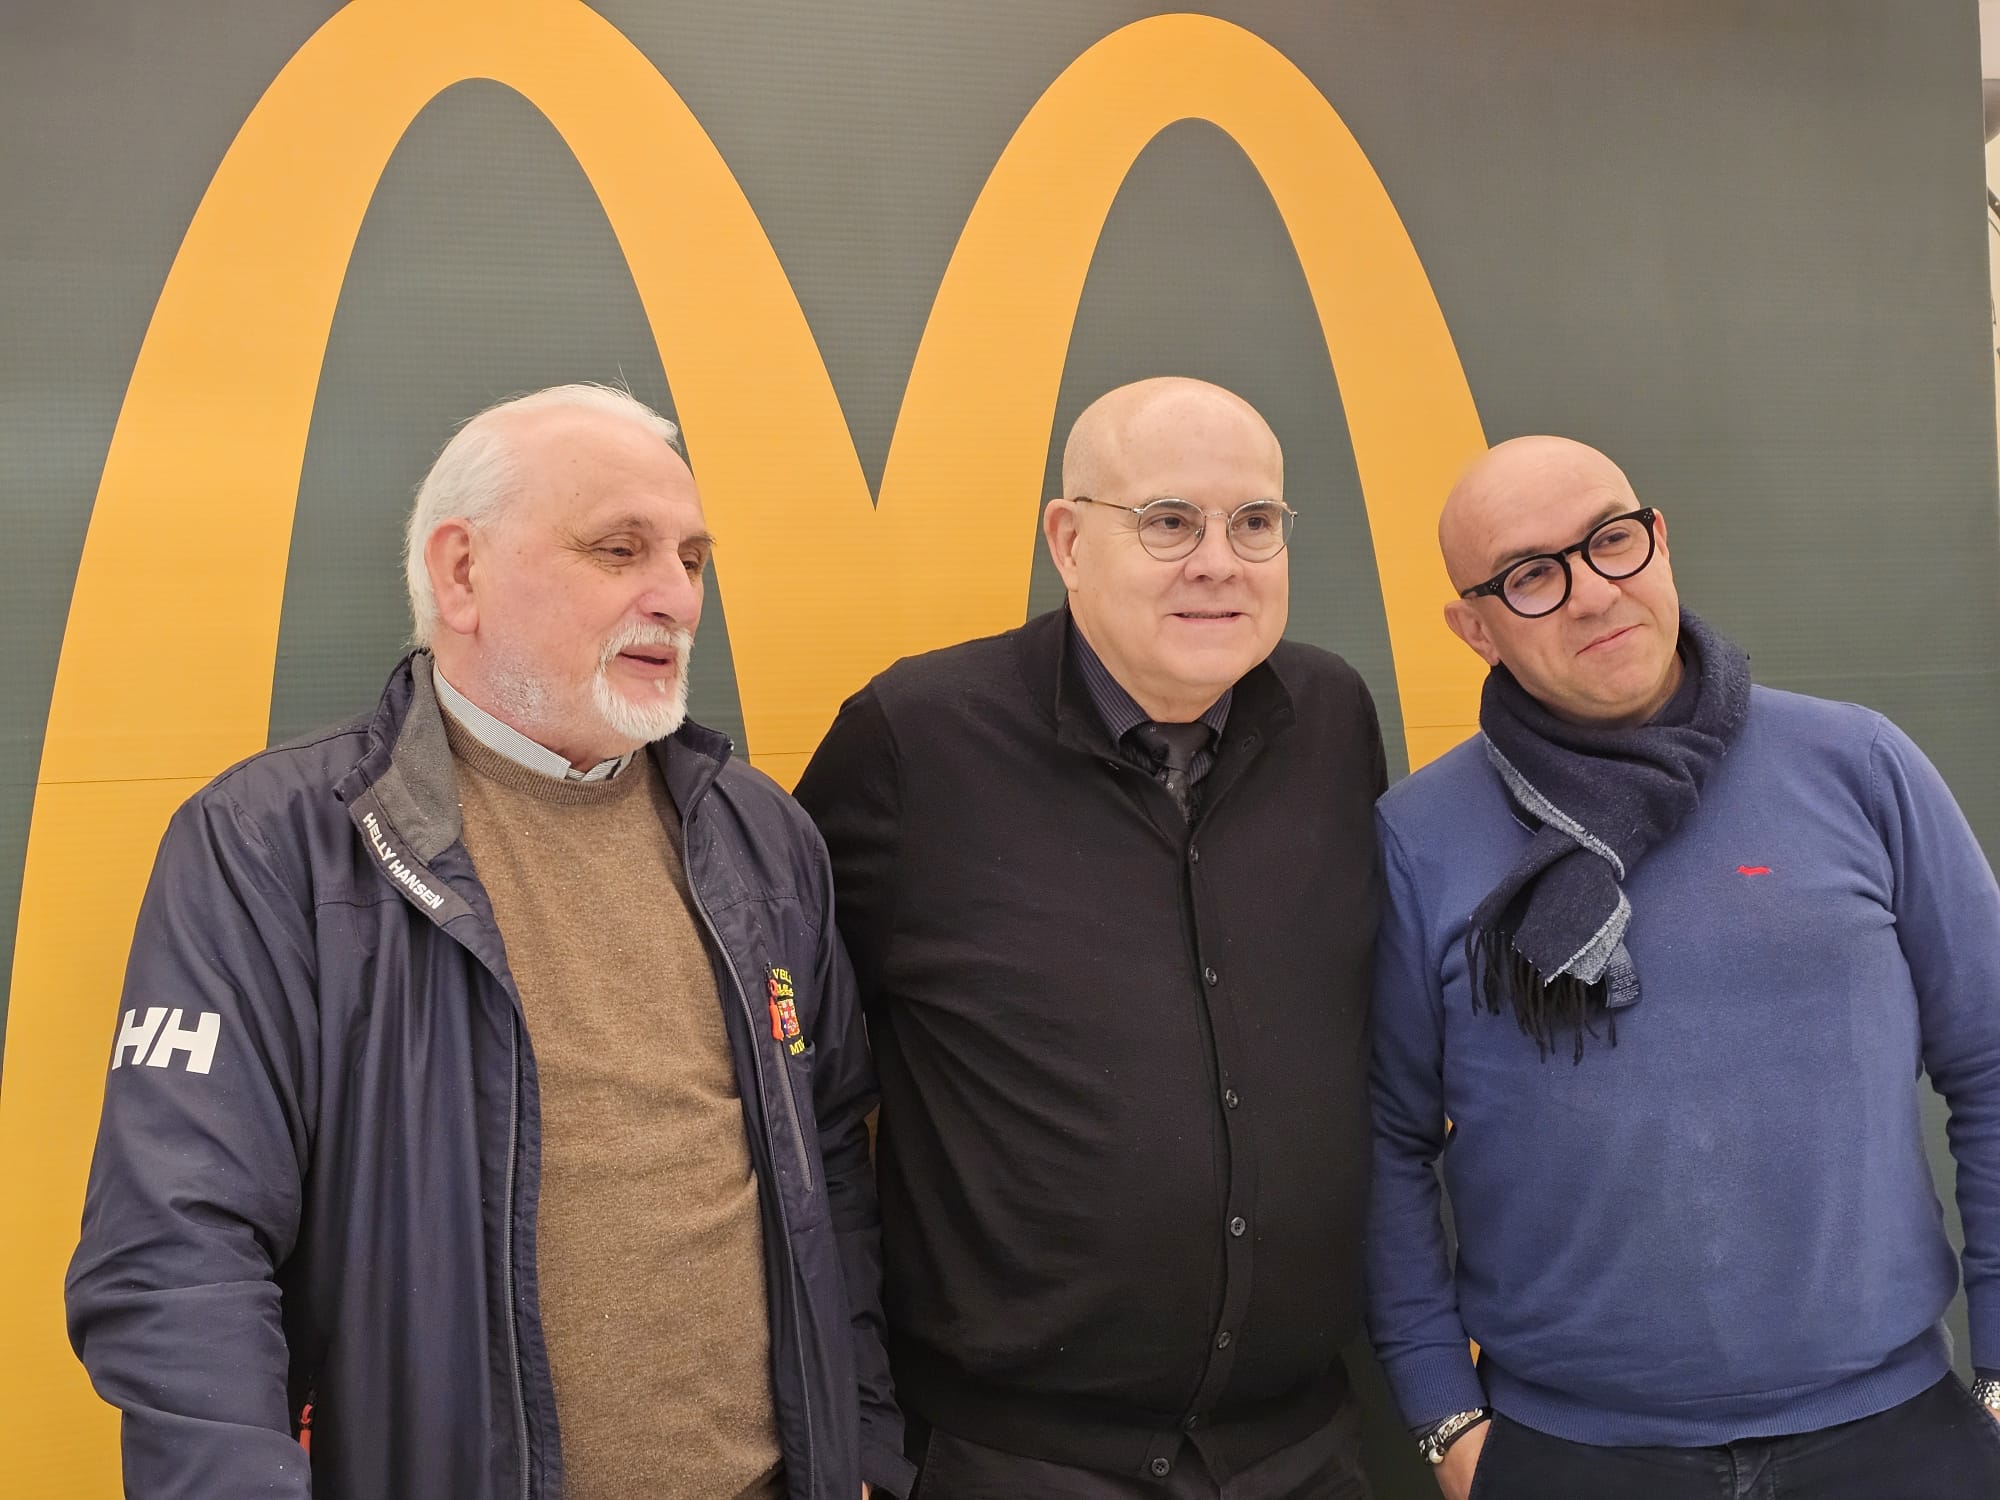 Salerno – Potenza: McDonald’s – Fondazione Ronald McDonald, 350 pasti caldi a settimana